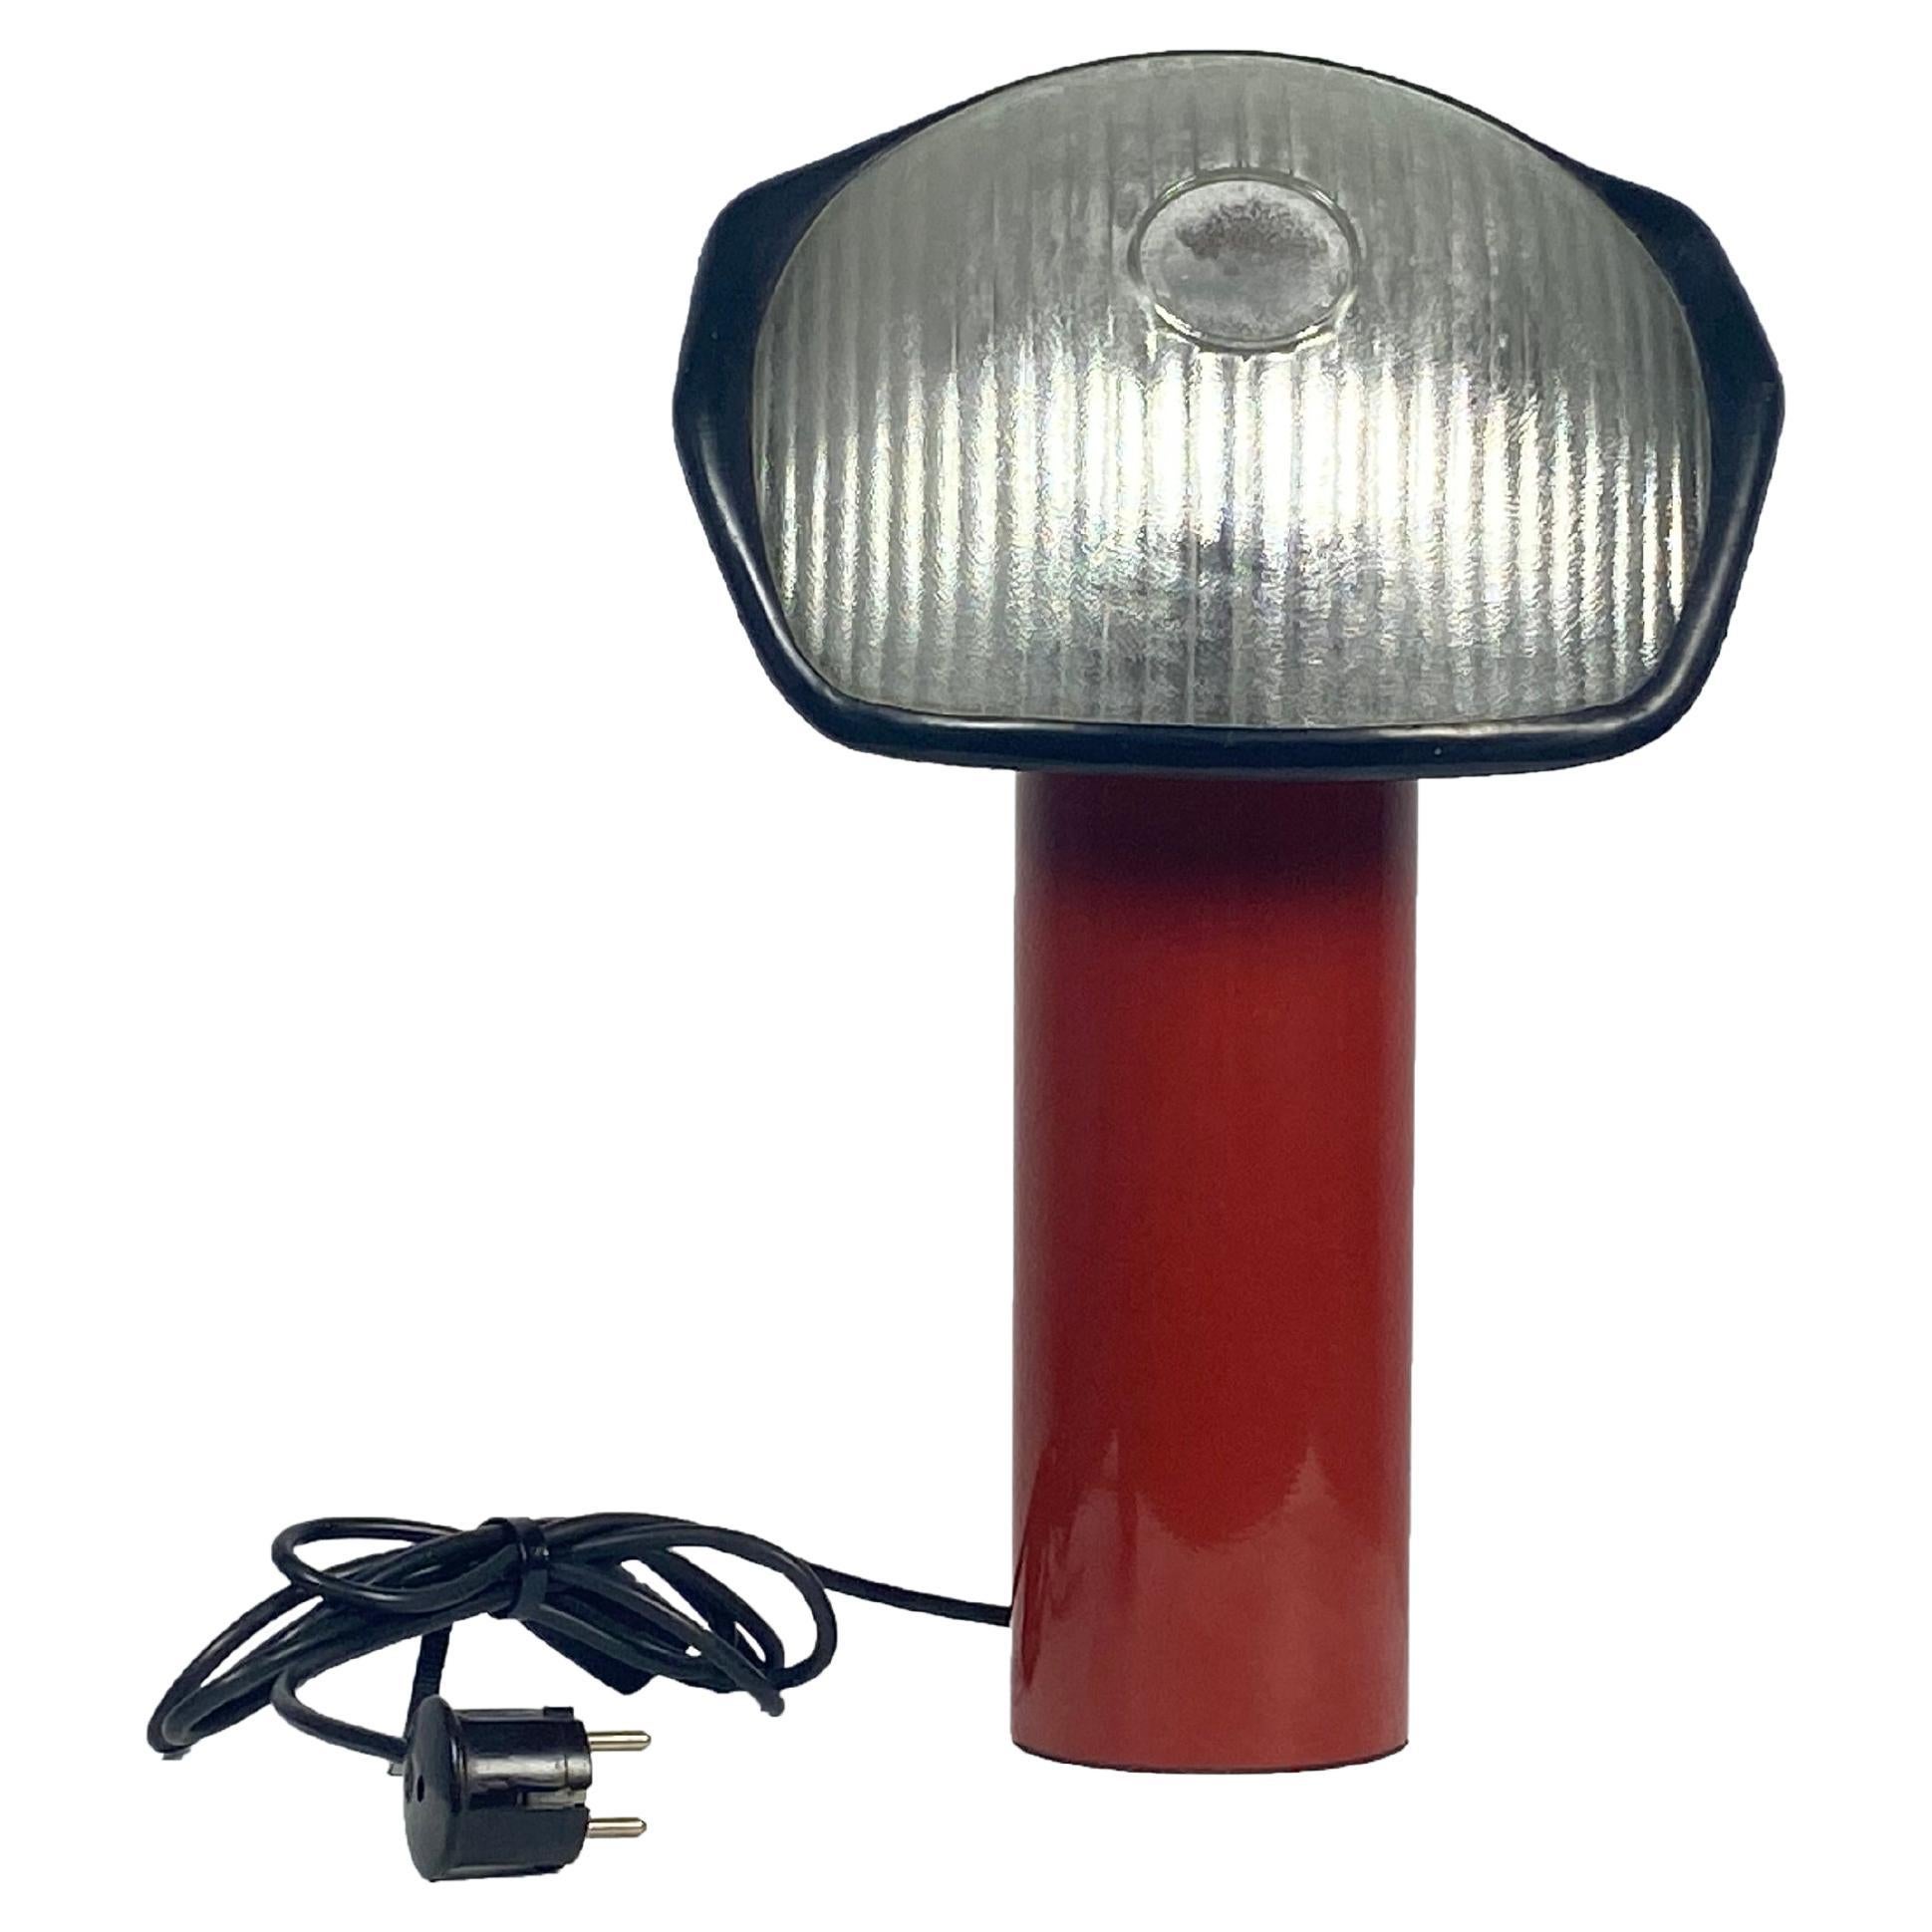 Artemide Brontes, lampe de bureau

Lampe postmoderne Brontes, conçue par Cini Boeri pour Artemide en 1981, avec des fabricants de literie.

une lampe de bureau post-moderne créant une lumière d'ambiance sur votre bureau ou également un élément très